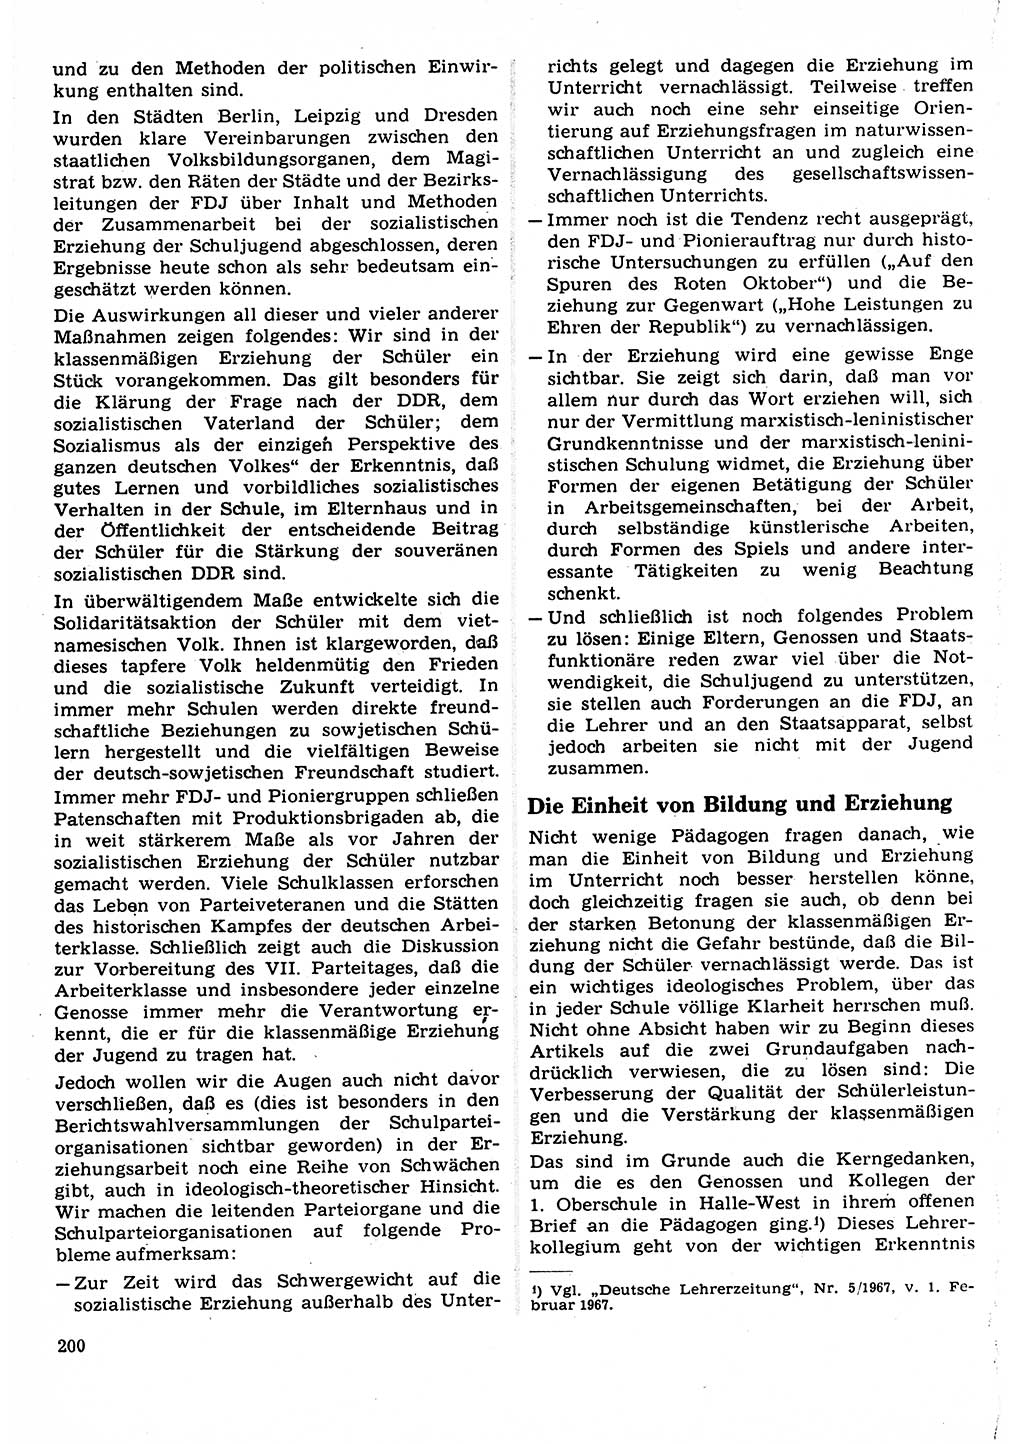 Neuer Weg (NW), Organ des Zentralkomitees (ZK) der SED (Sozialistische Einheitspartei Deutschlands) für Fragen des Parteilebens, 22. Jahrgang [Deutsche Demokratische Republik (DDR)] 1967, Seite 200 (NW ZK SED DDR 1967, S. 200)